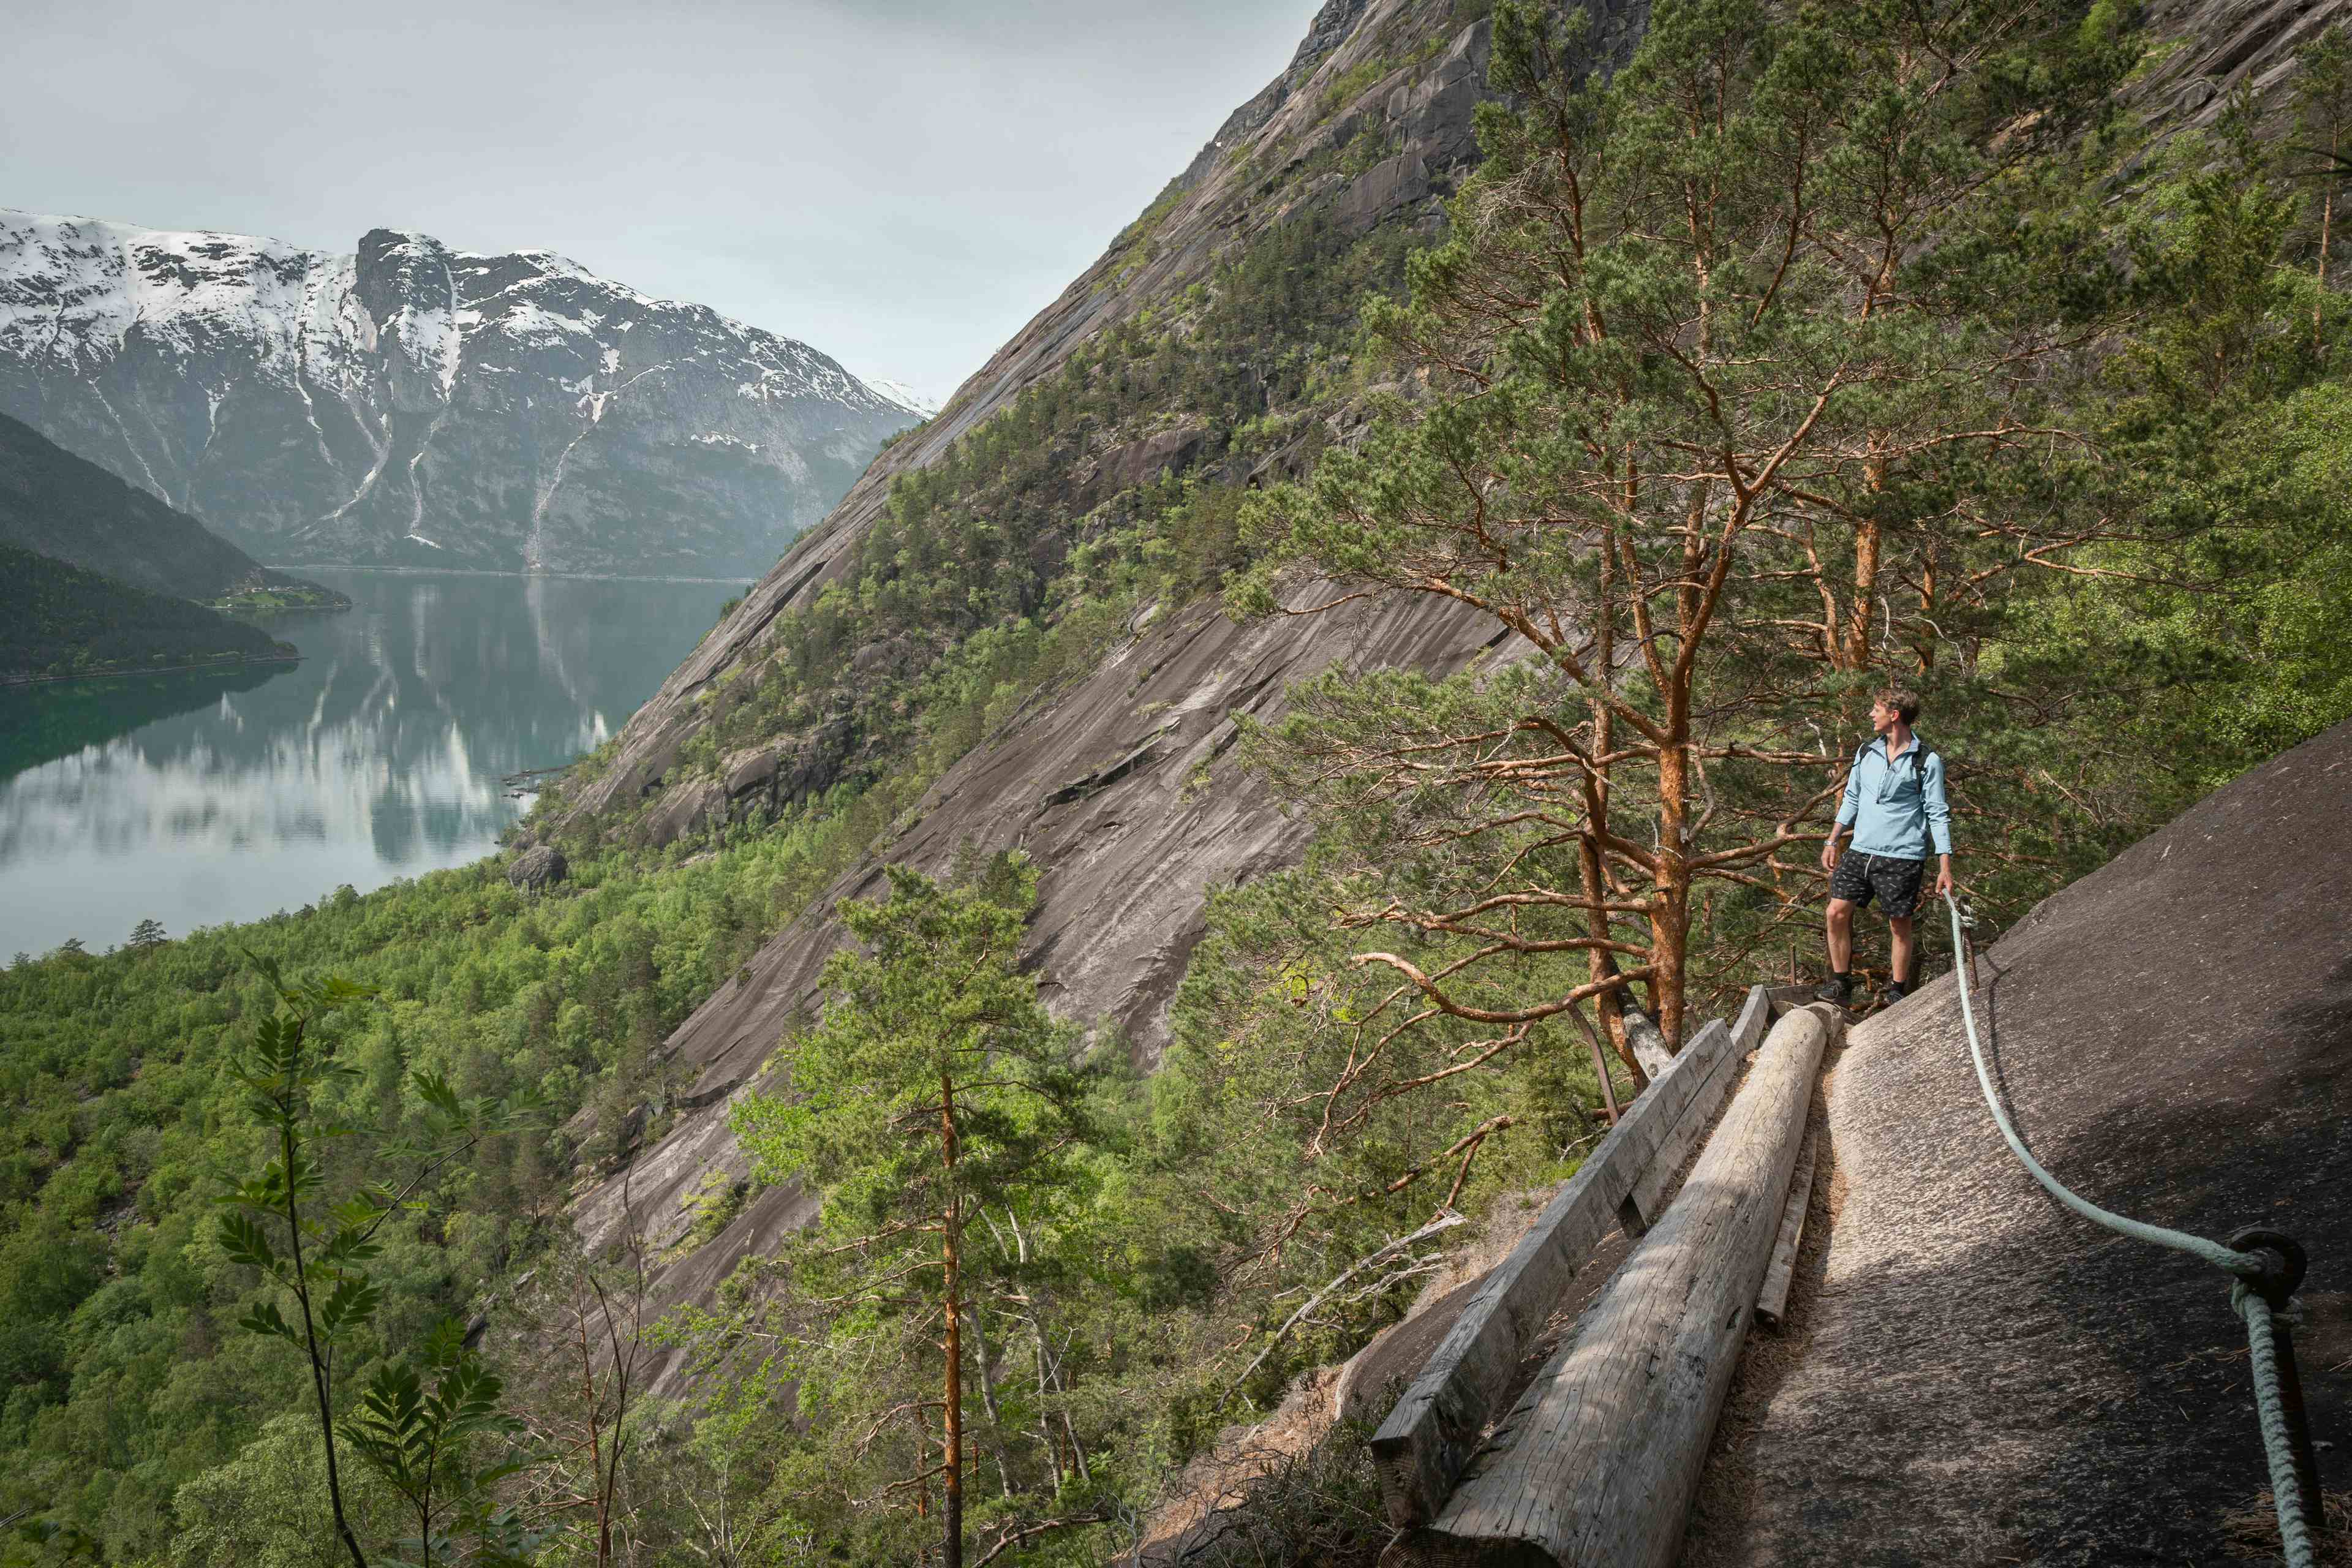 En kvinnelig turgåer som går på trestien boltet inn i fjellveggen ved siden av fjorden.